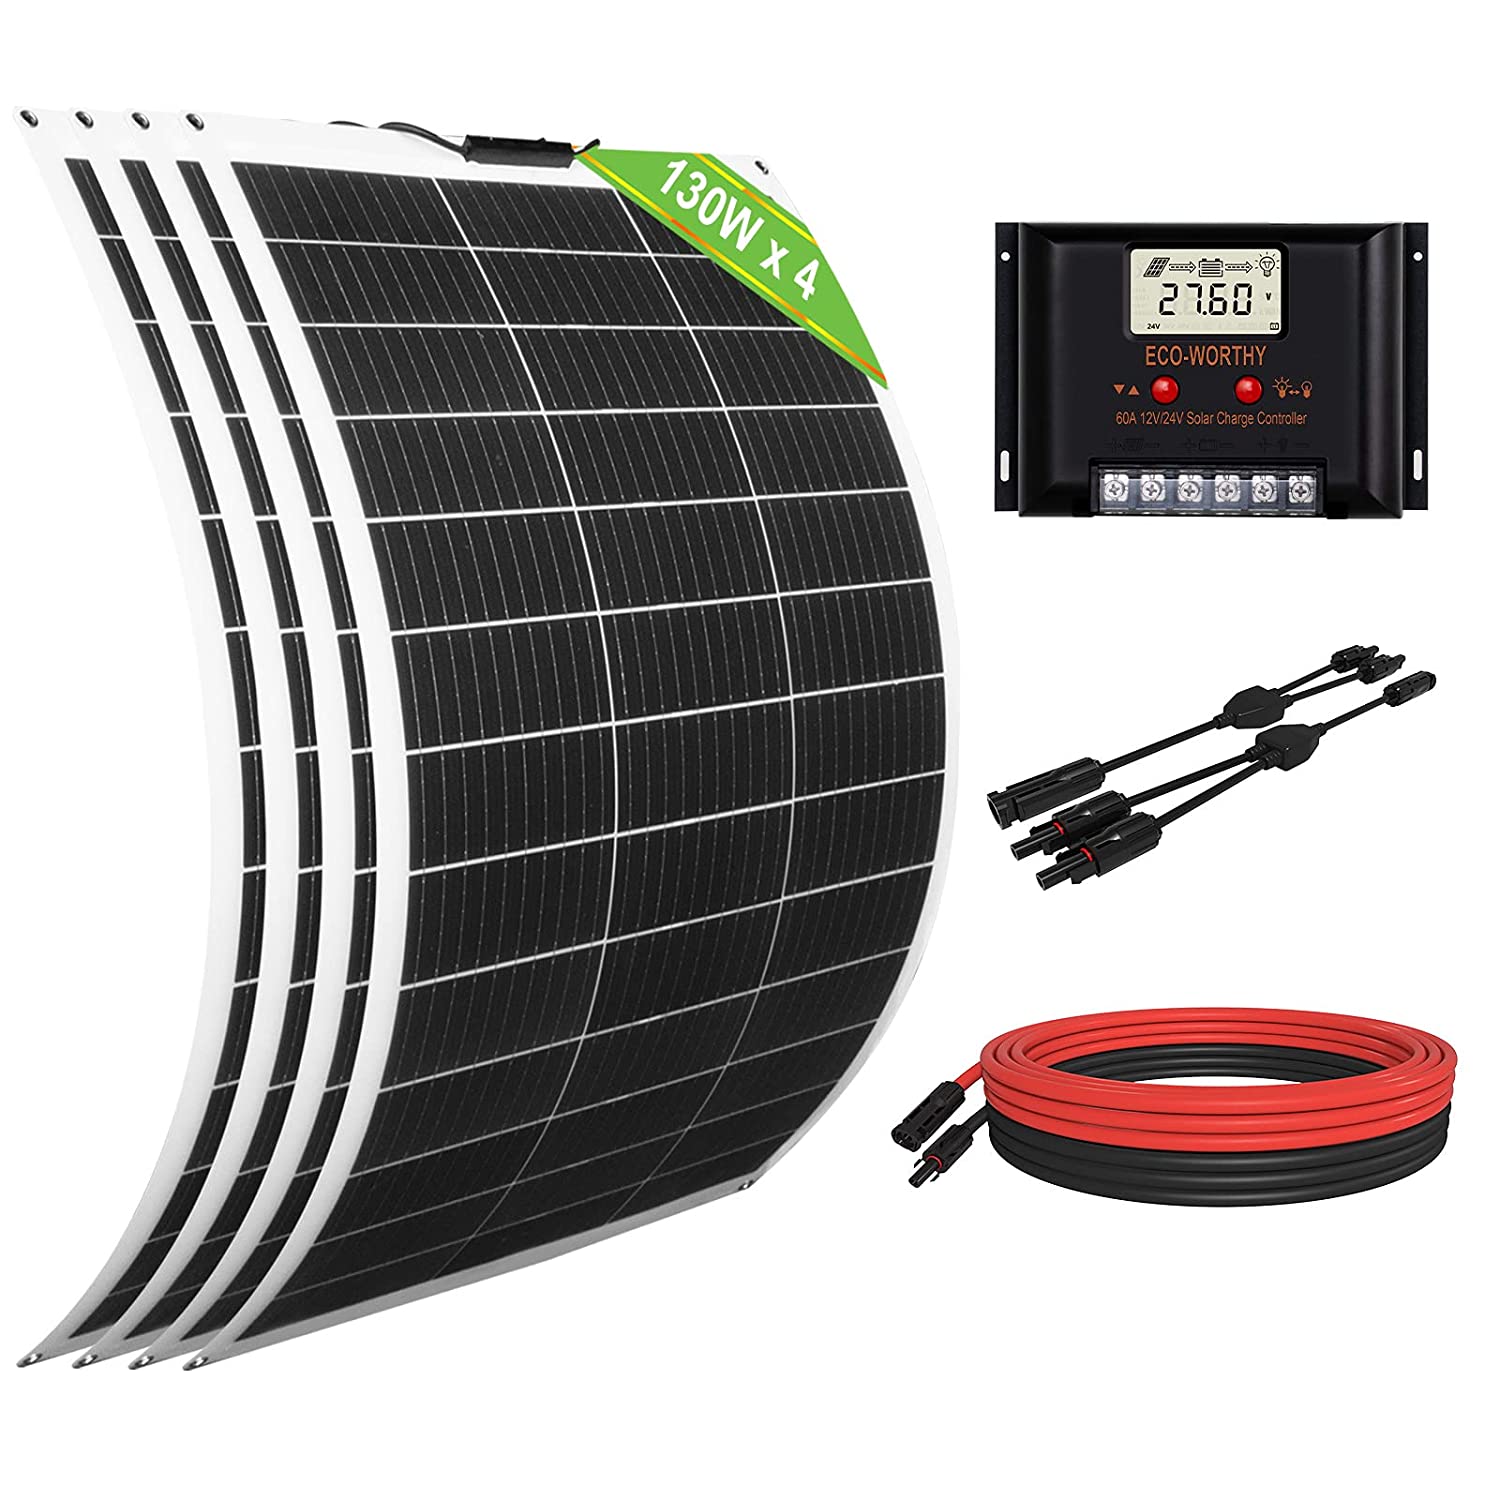 ECO-WORTHY Kit de panel solar flexible de 520 W, 24 V, con red independiente: 4 paneles solares de 130 W